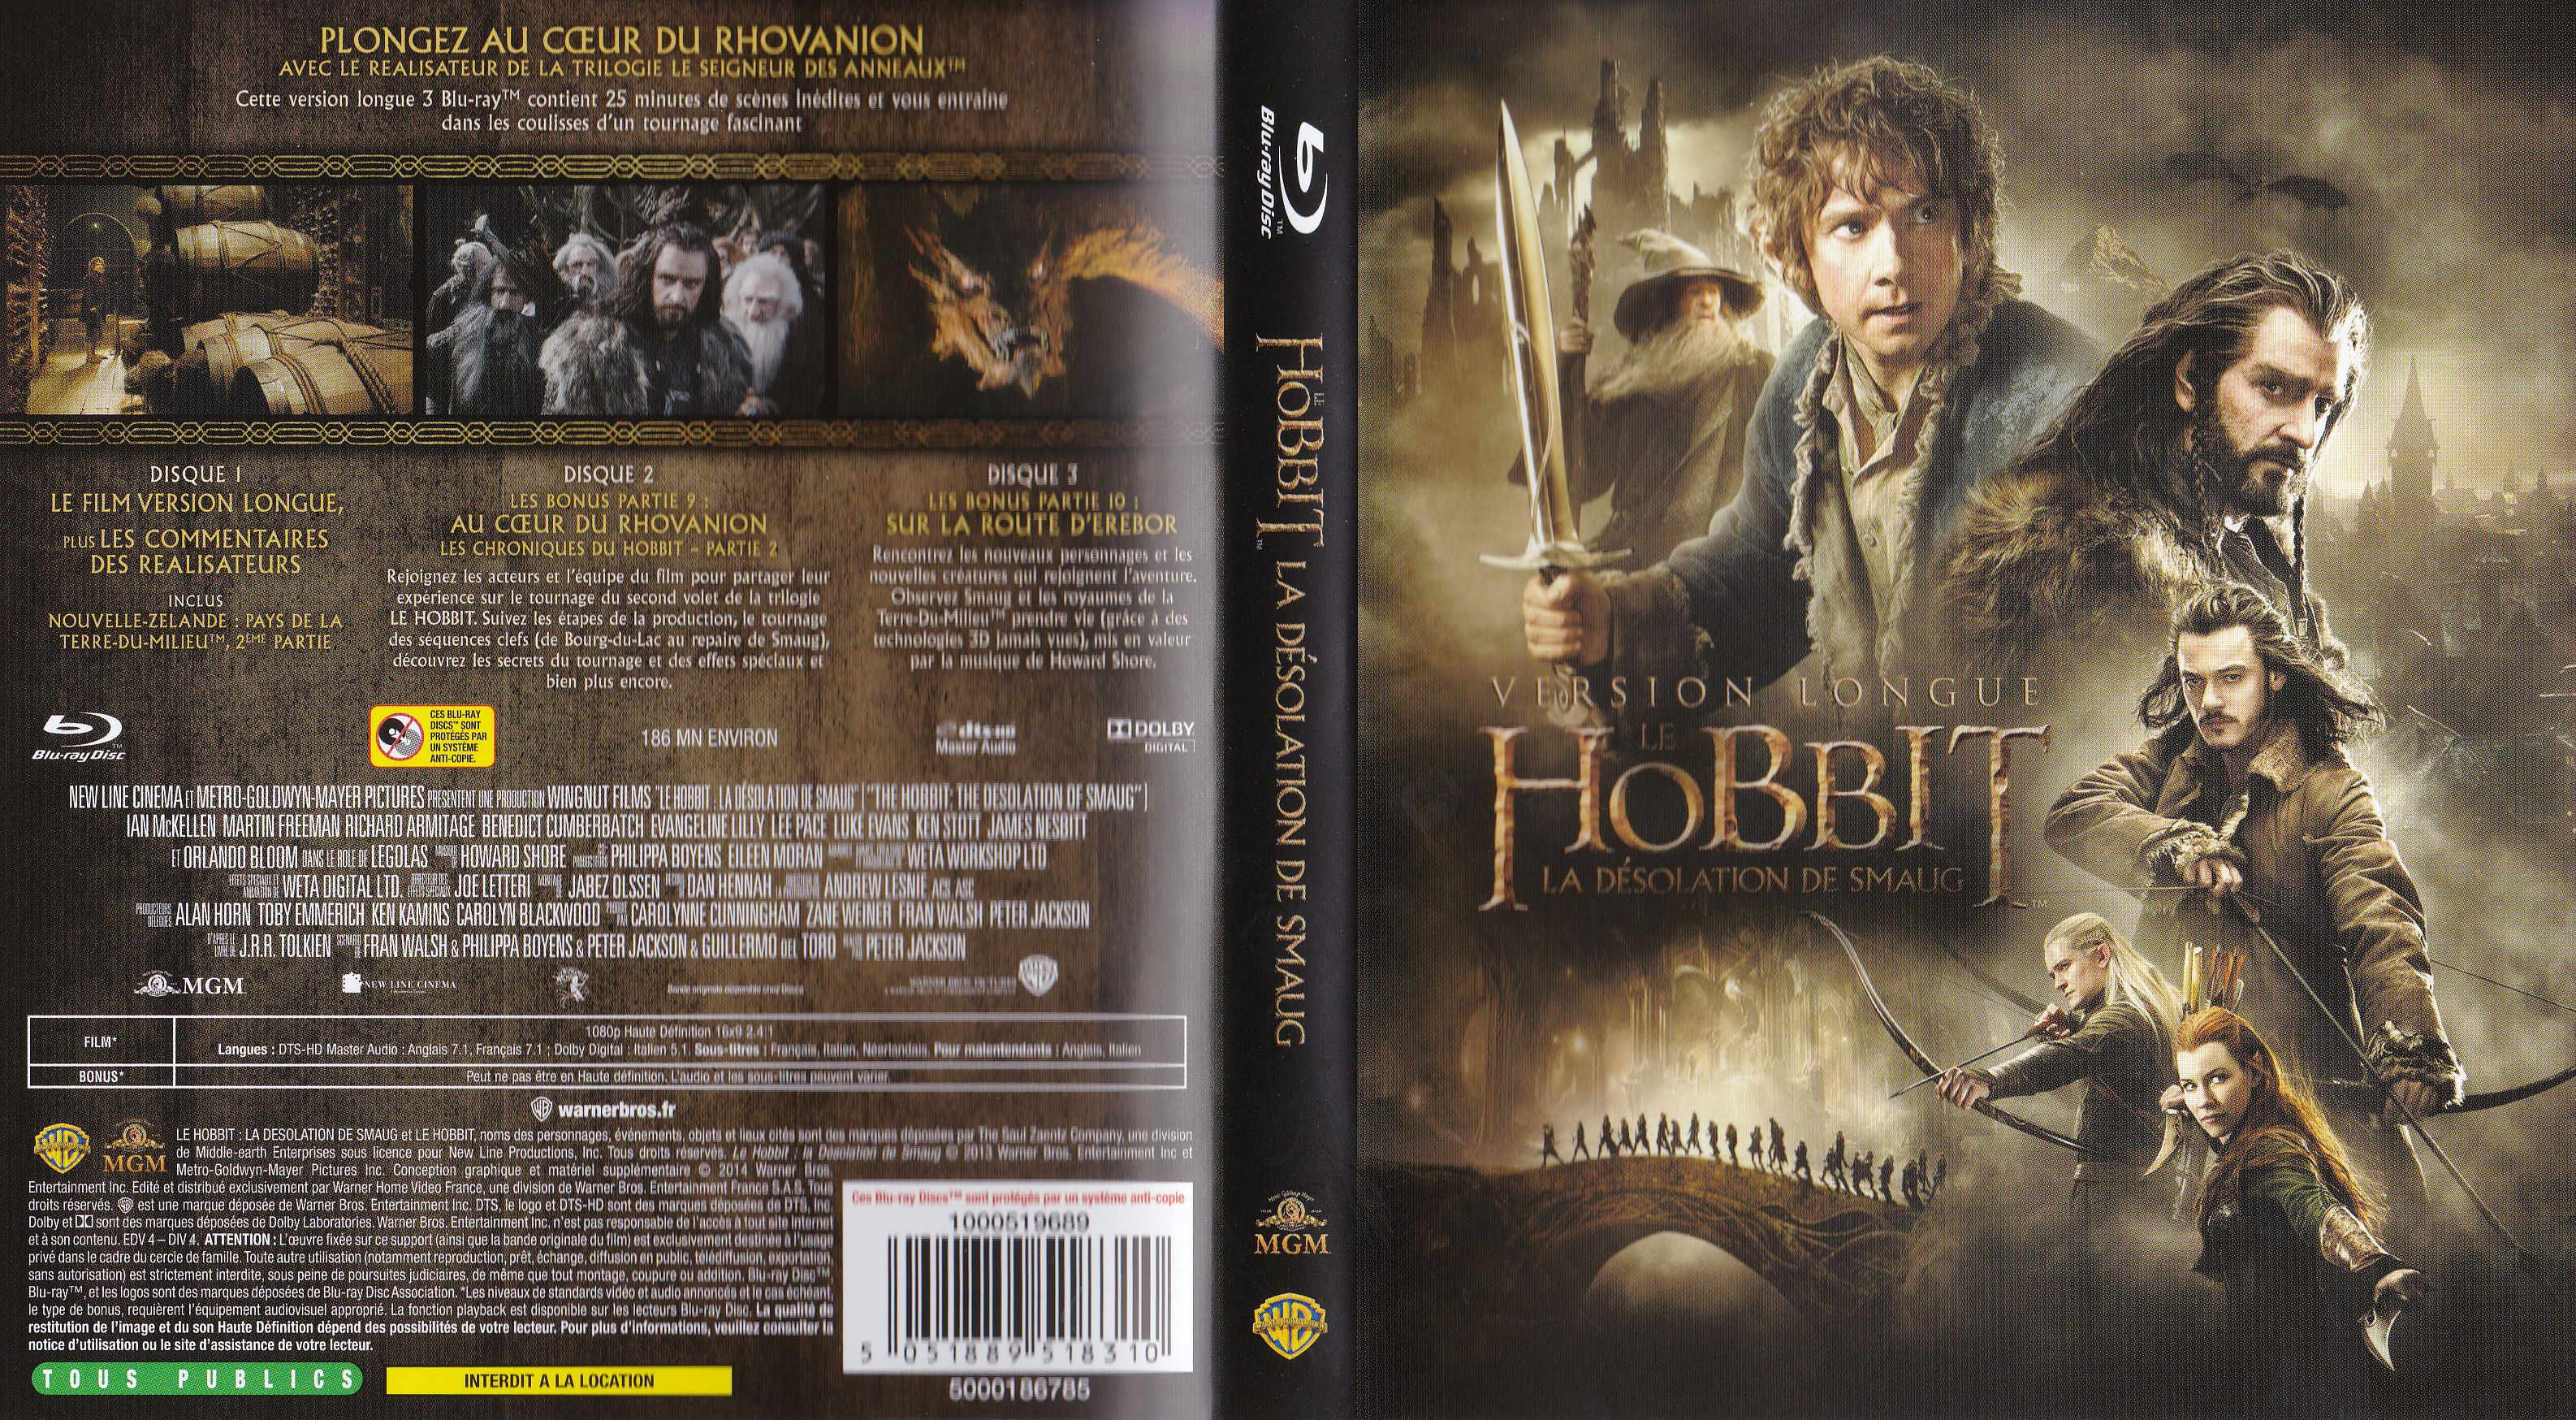 Jaquette DVD Le Hobbit la Dsolation de Smaug (BLU-RAY)